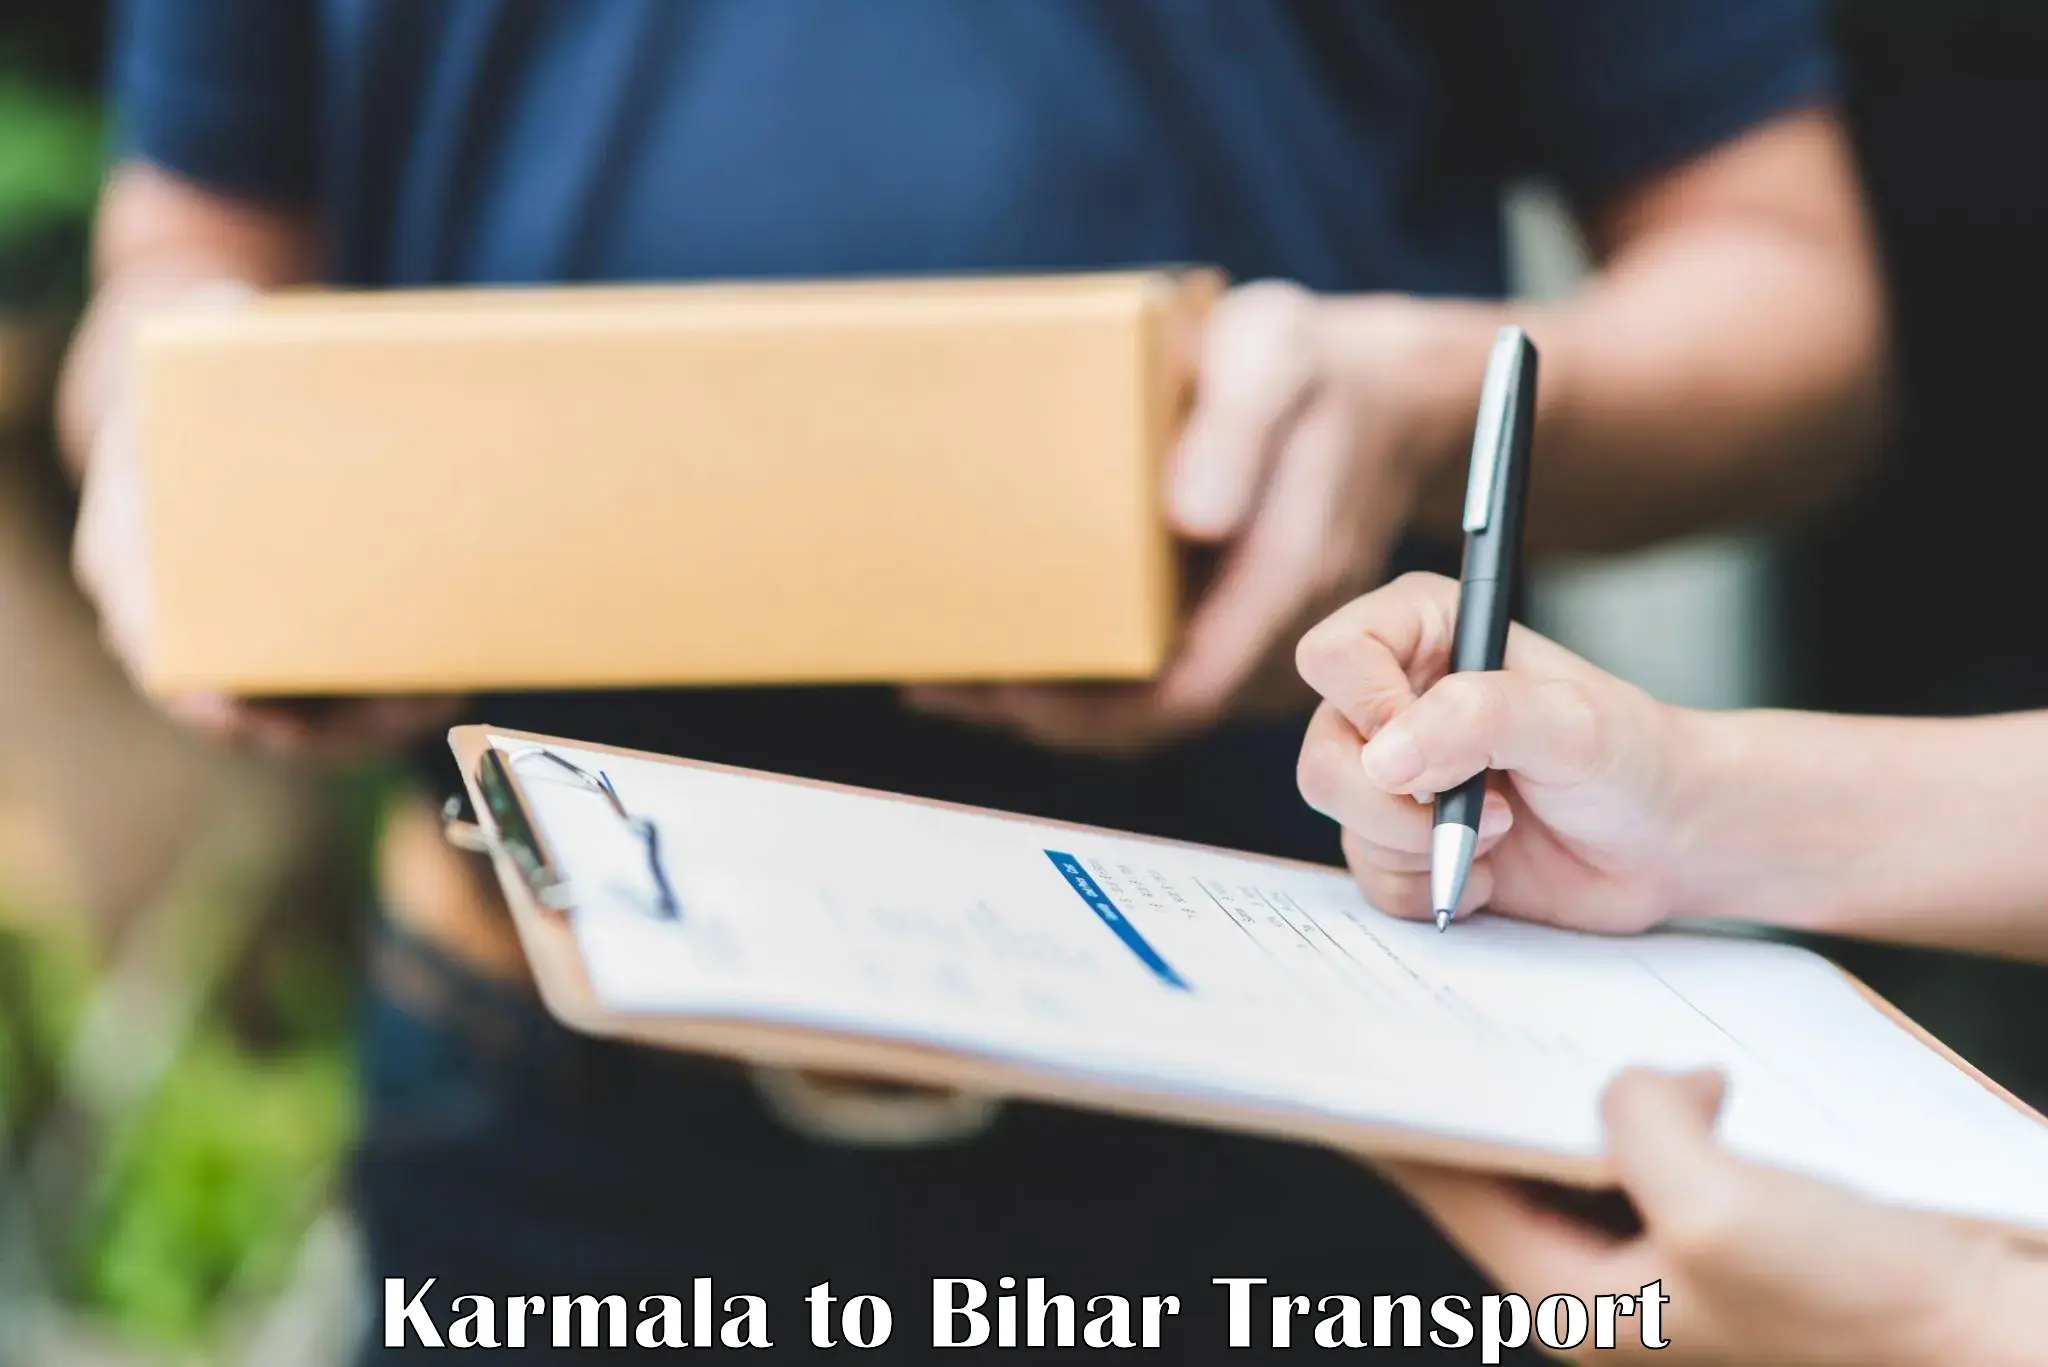 Nearest transport service Karmala to Sugauli